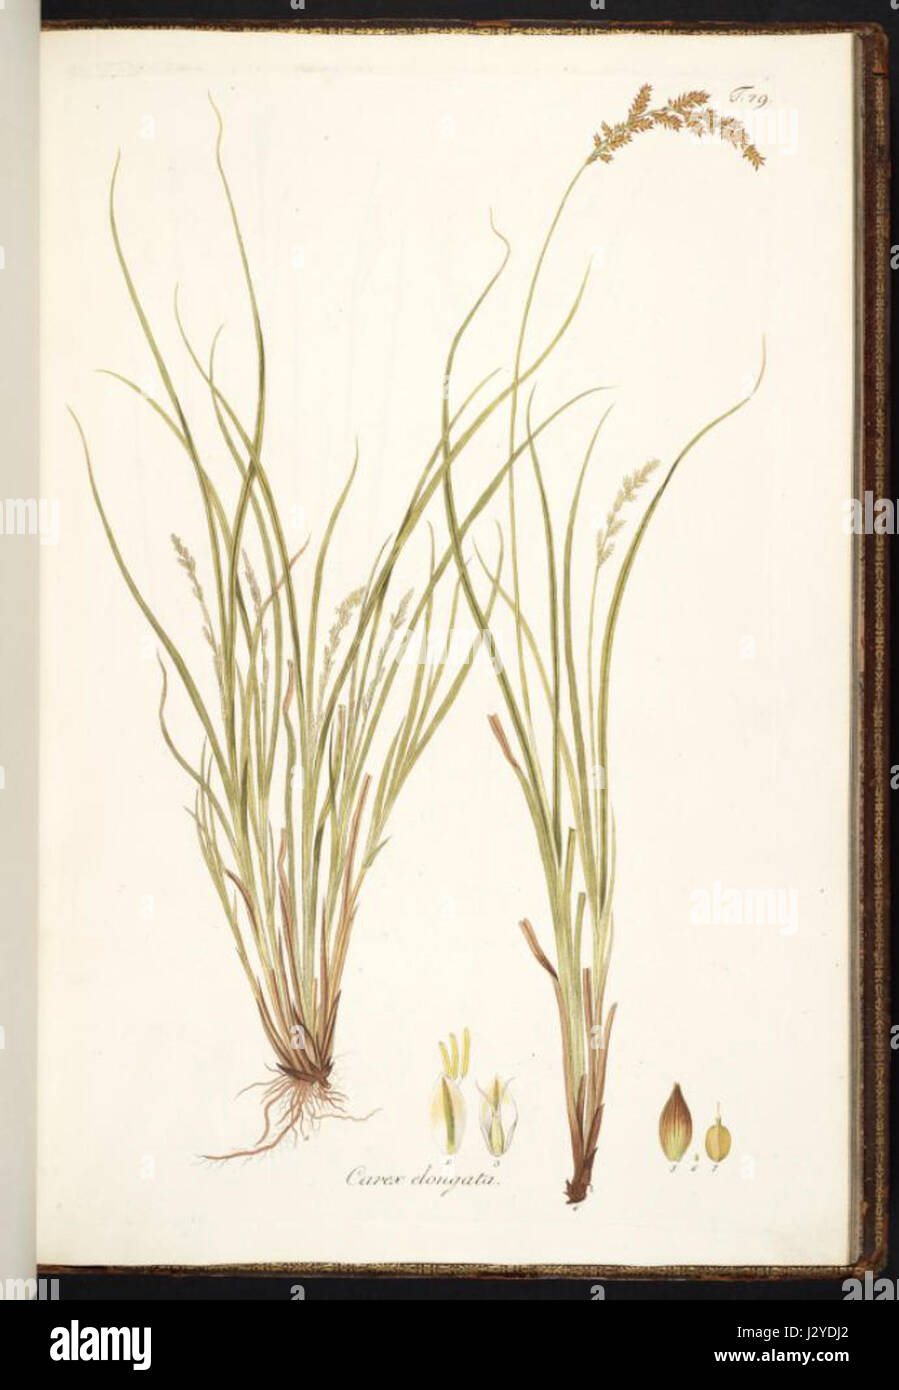 Carex elongata Stock Photo